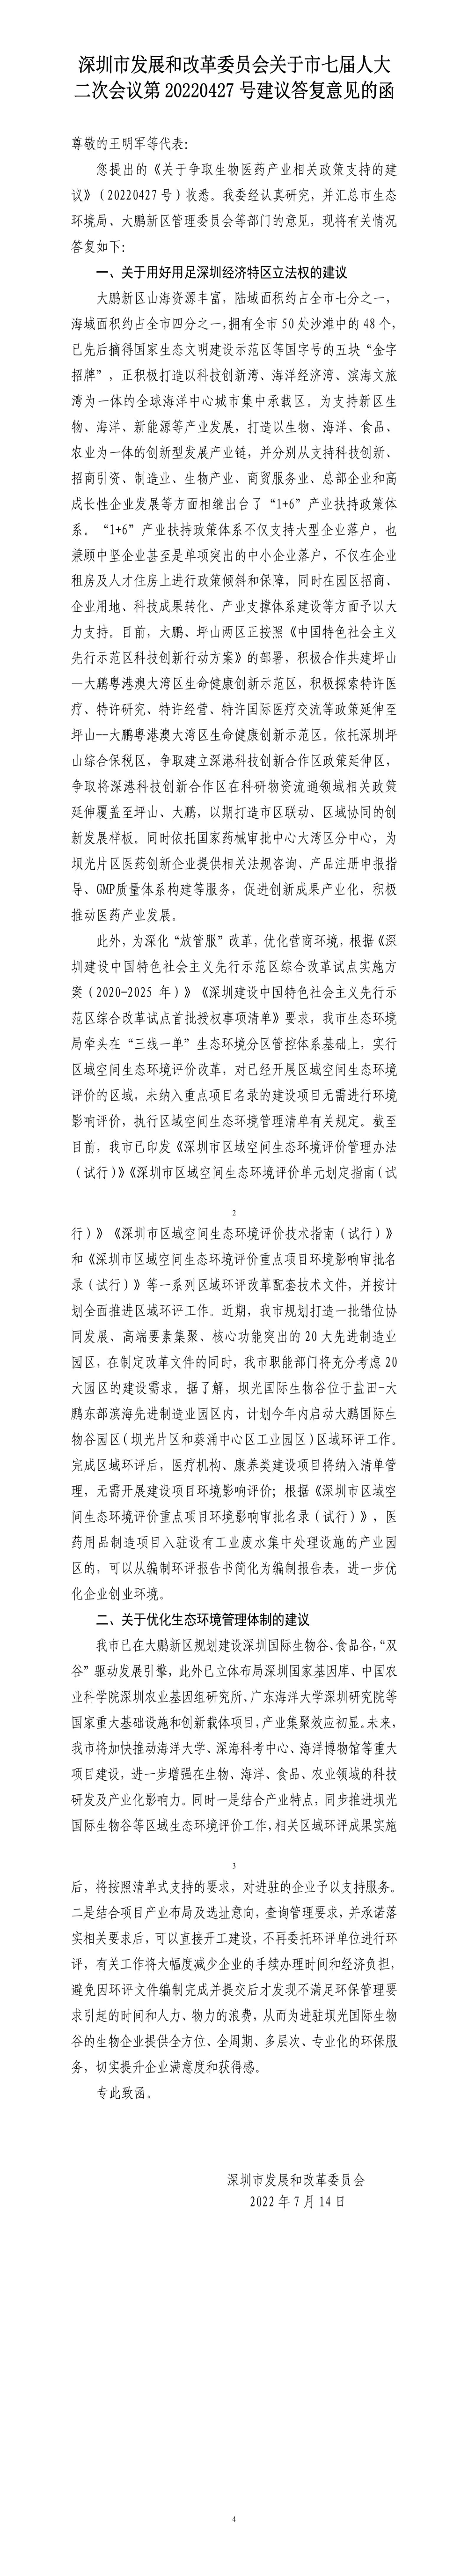 深圳市发展和改革委员会关于市七届人大二次会议第20220427号建议答复意见的函.jpg